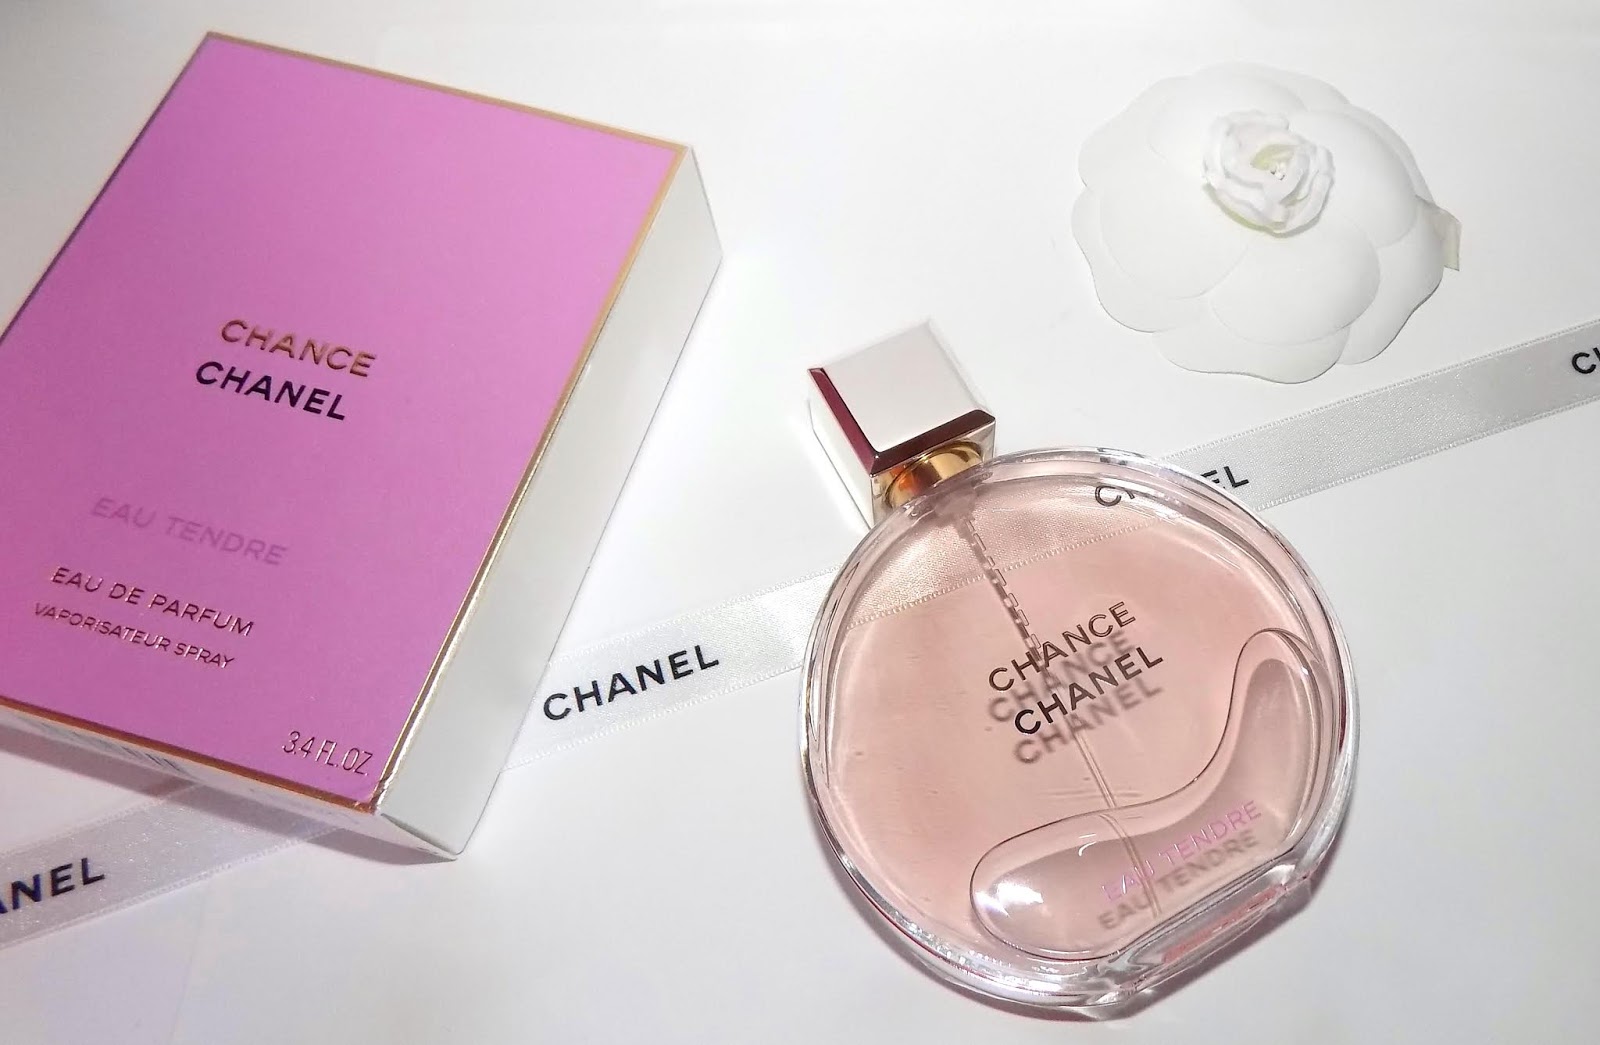 Buy Chanel Chance Eau Tendre 100ml EDT for Women Online